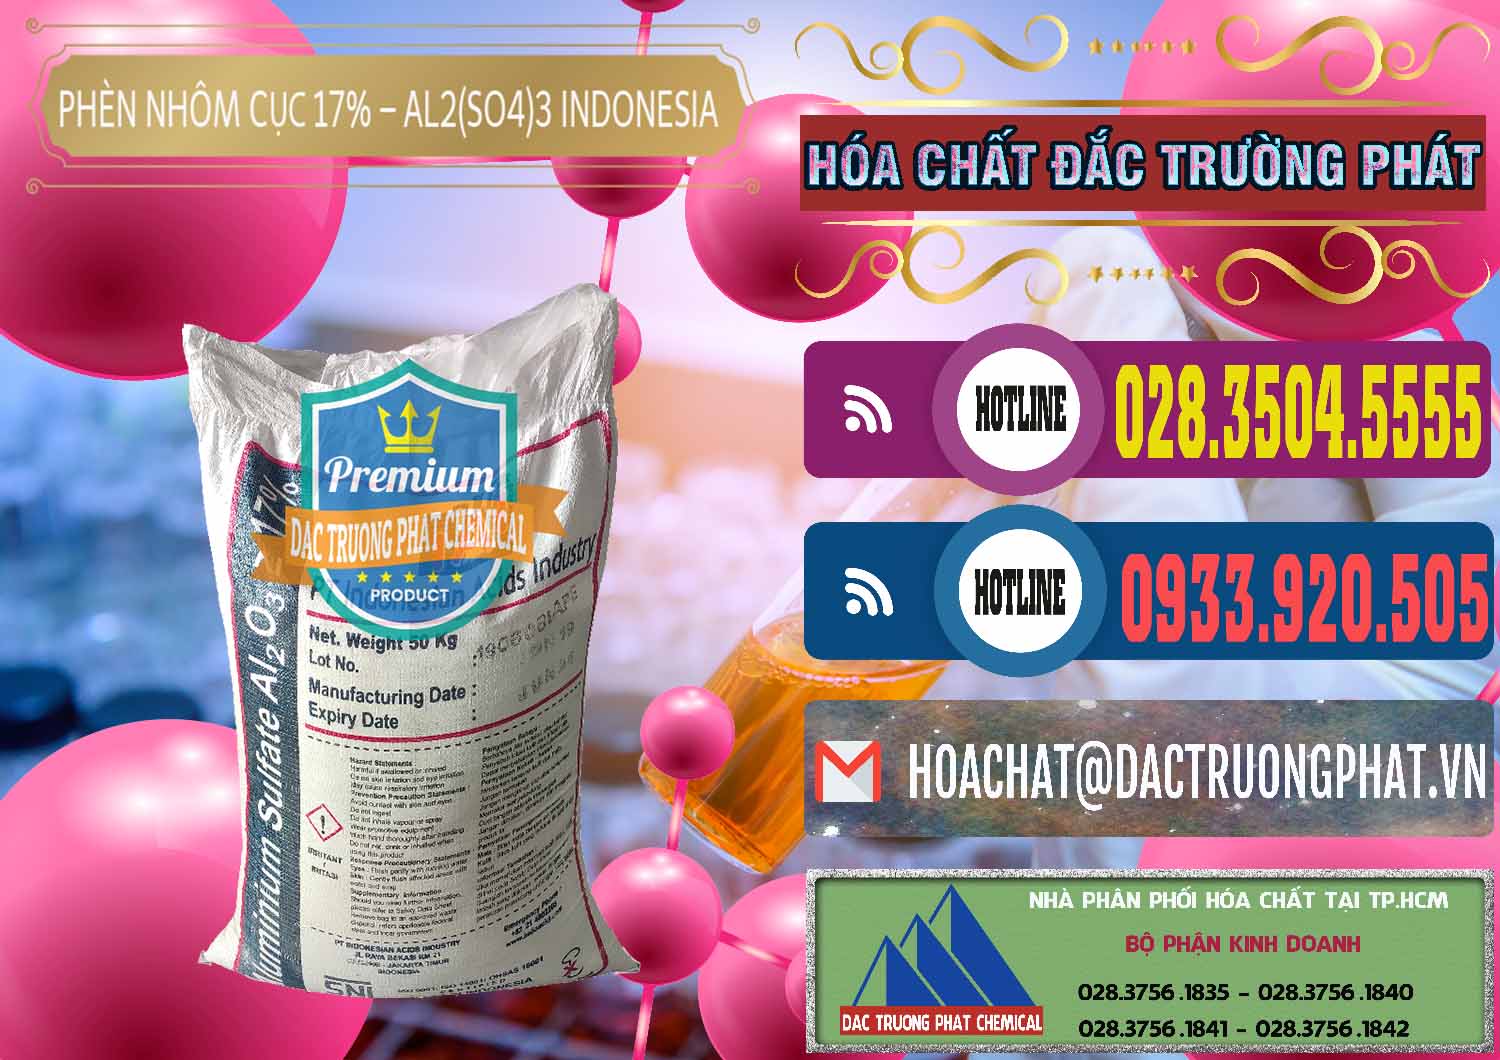 Cty bán - cung cấp Phèn Nhôm Cục - Al2(SO4)3 17% bao 50kg Indonesia - 0113 - Công ty chuyên phân phối _ bán hóa chất tại TP.HCM - muabanhoachat.com.vn